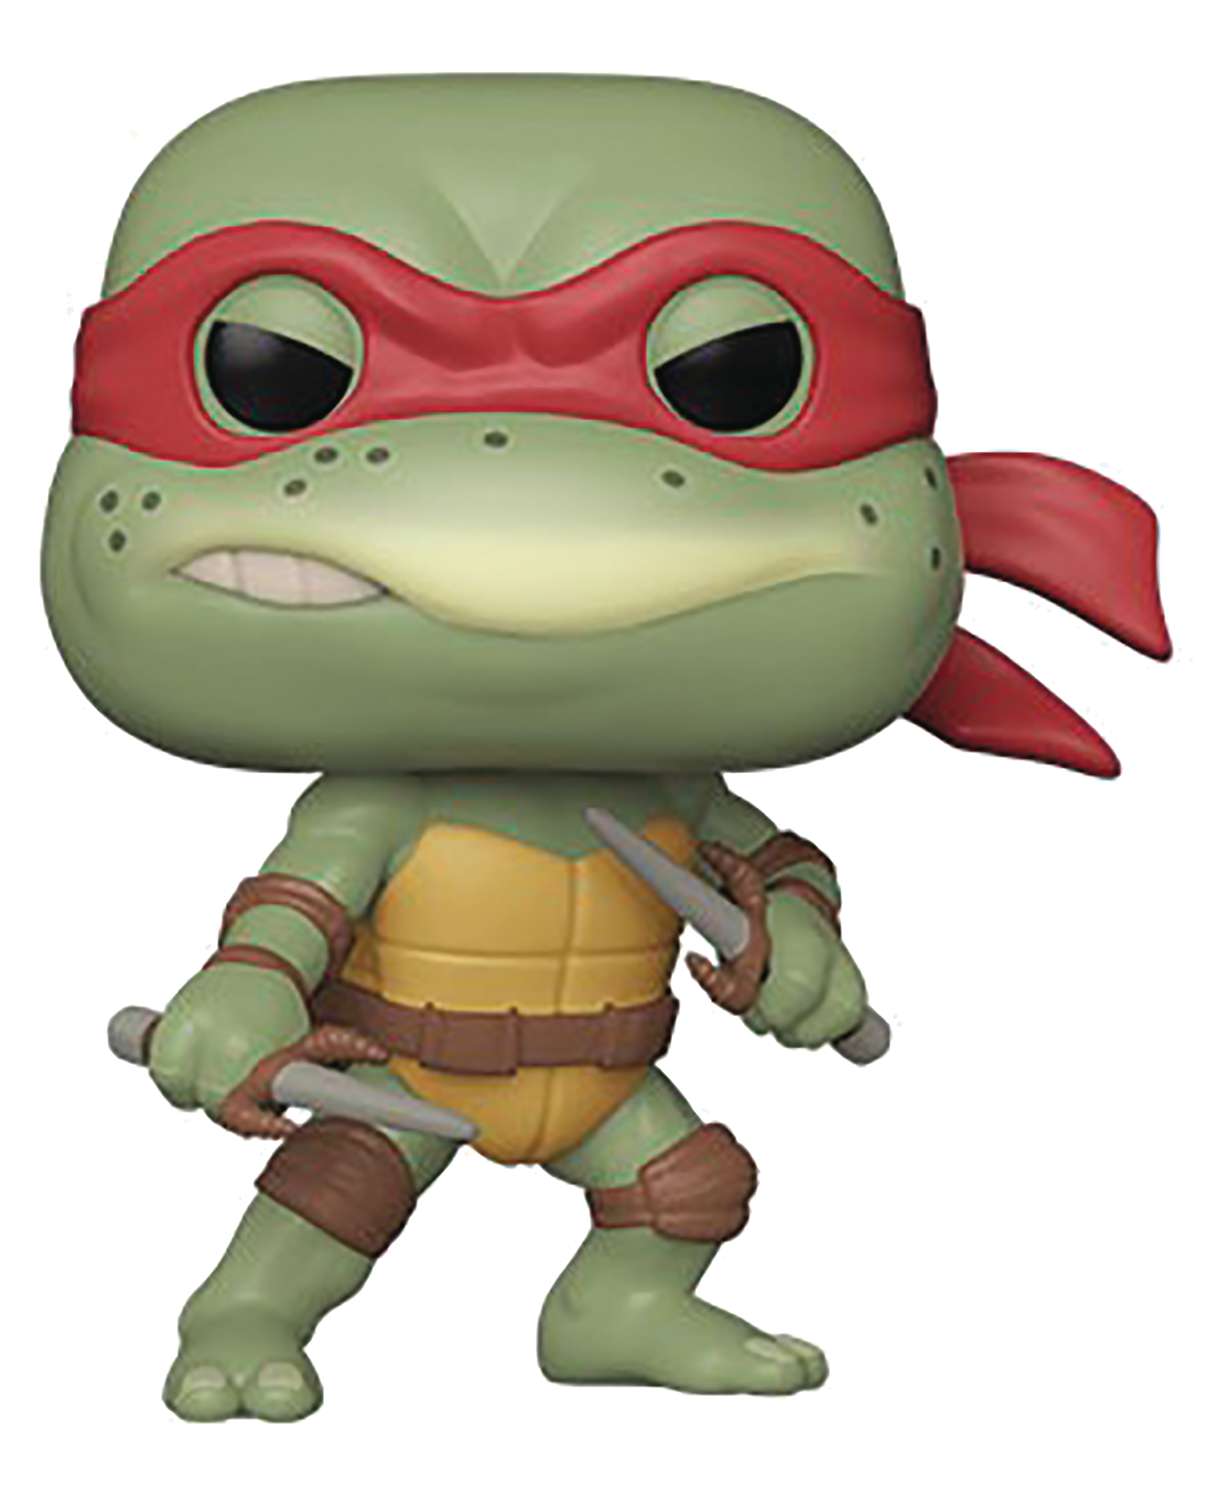 Pop Teenage Mutant Ninja Turtles Raphael Vinyl Figure